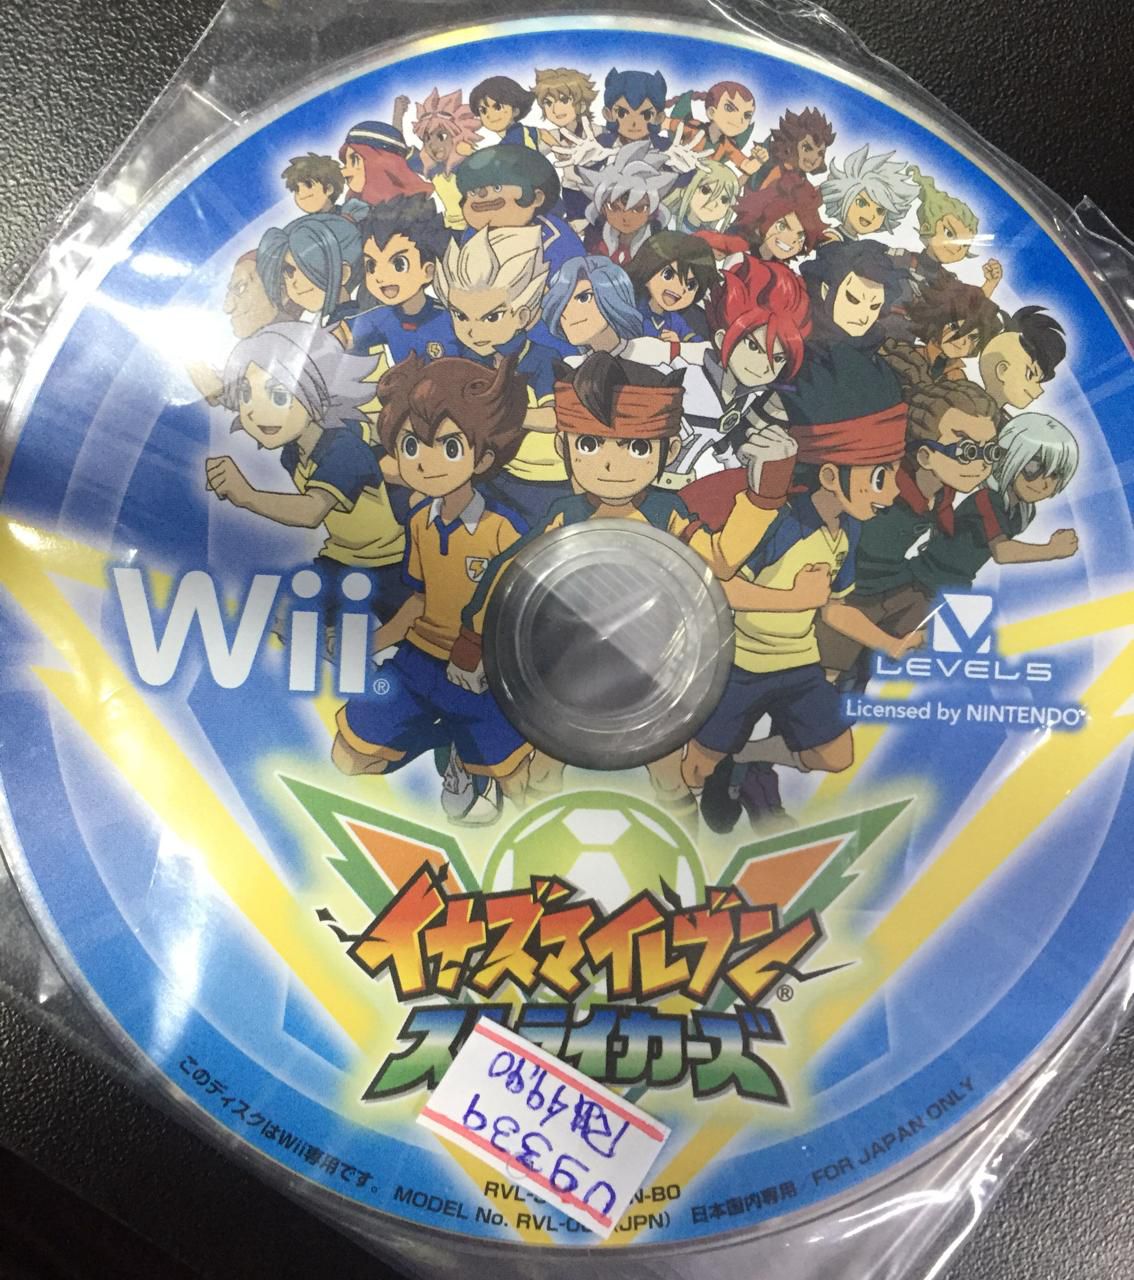 Inazuma Eleven Strikers, Wii, Jogos